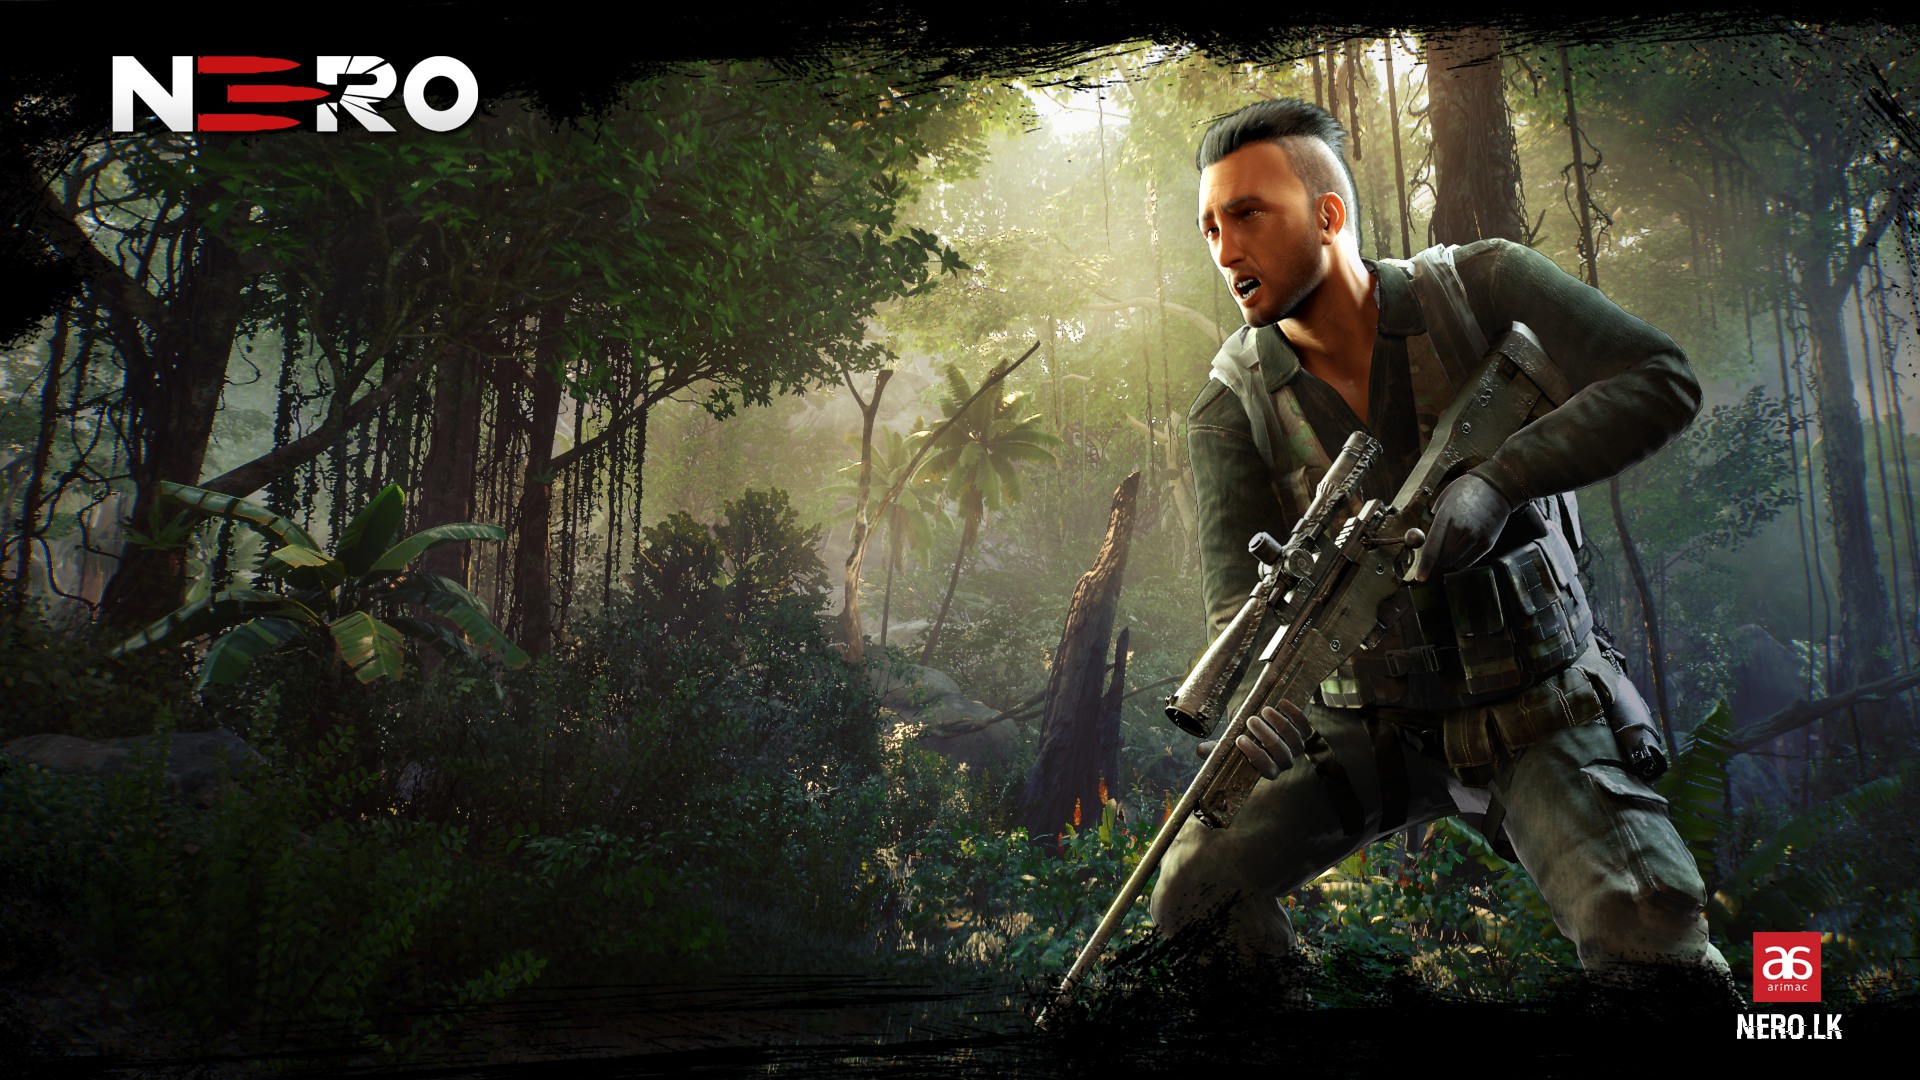 Sniper Computer Game ‘Nero’ released